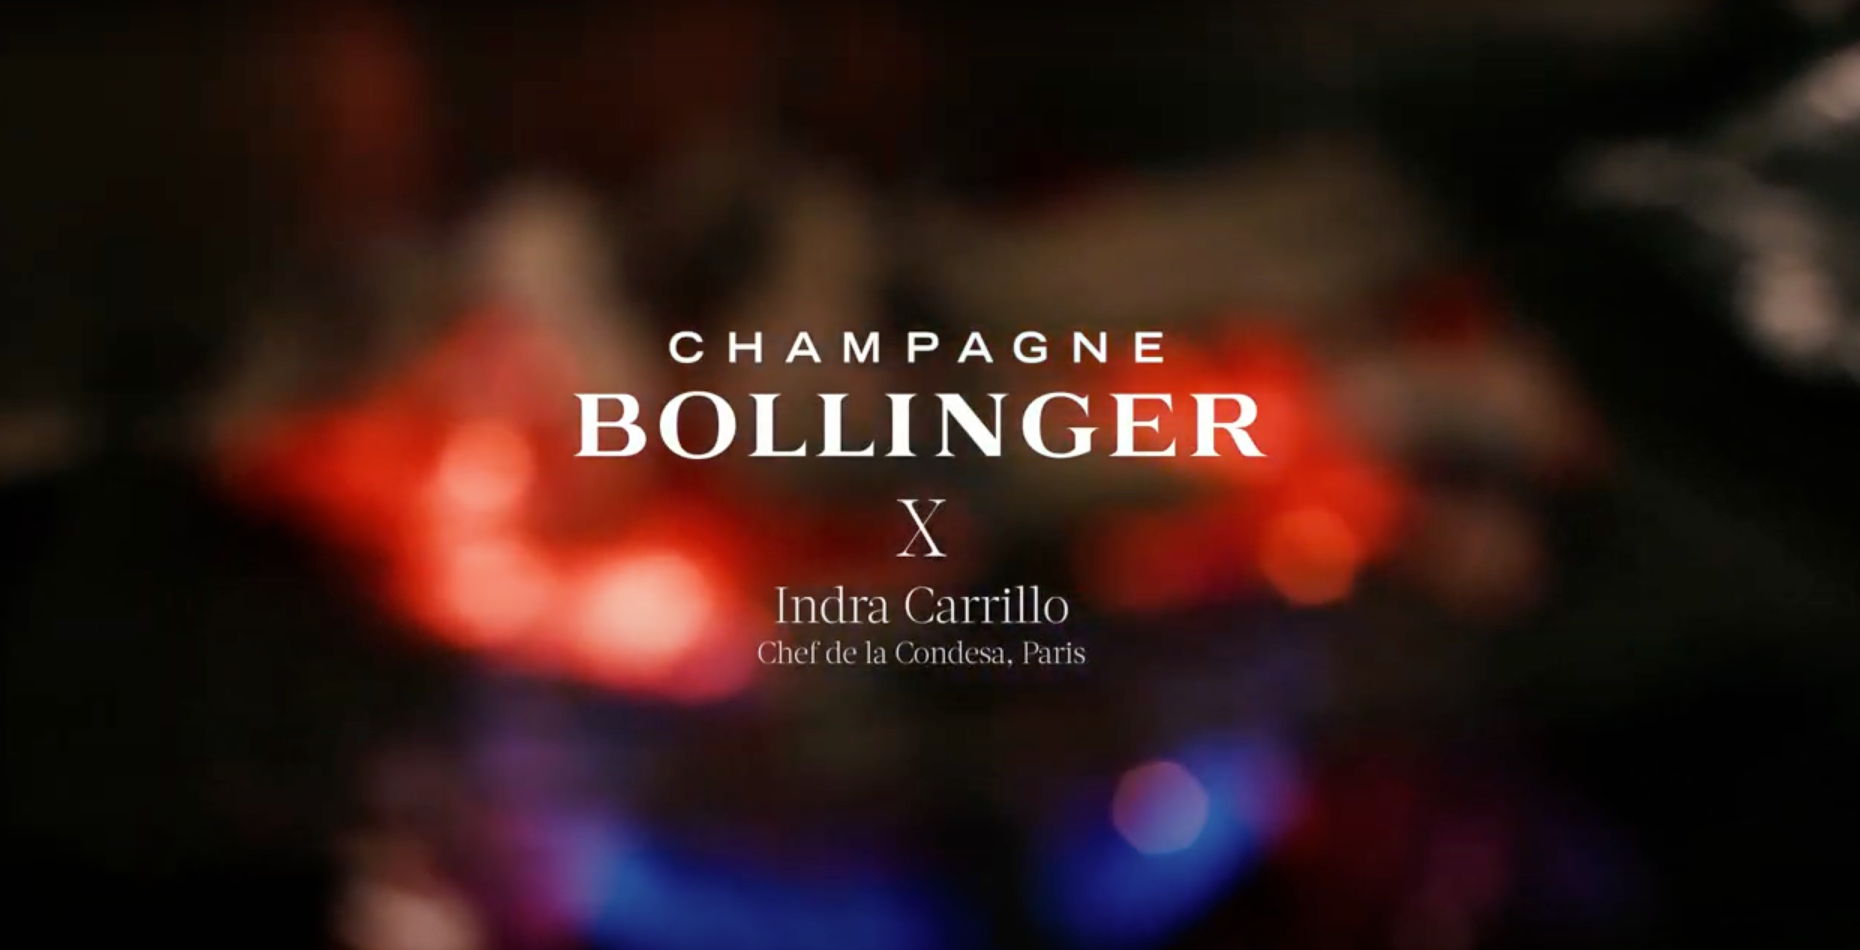 Champagne Bollinger X Indra Carrillo - La Condesa Paris